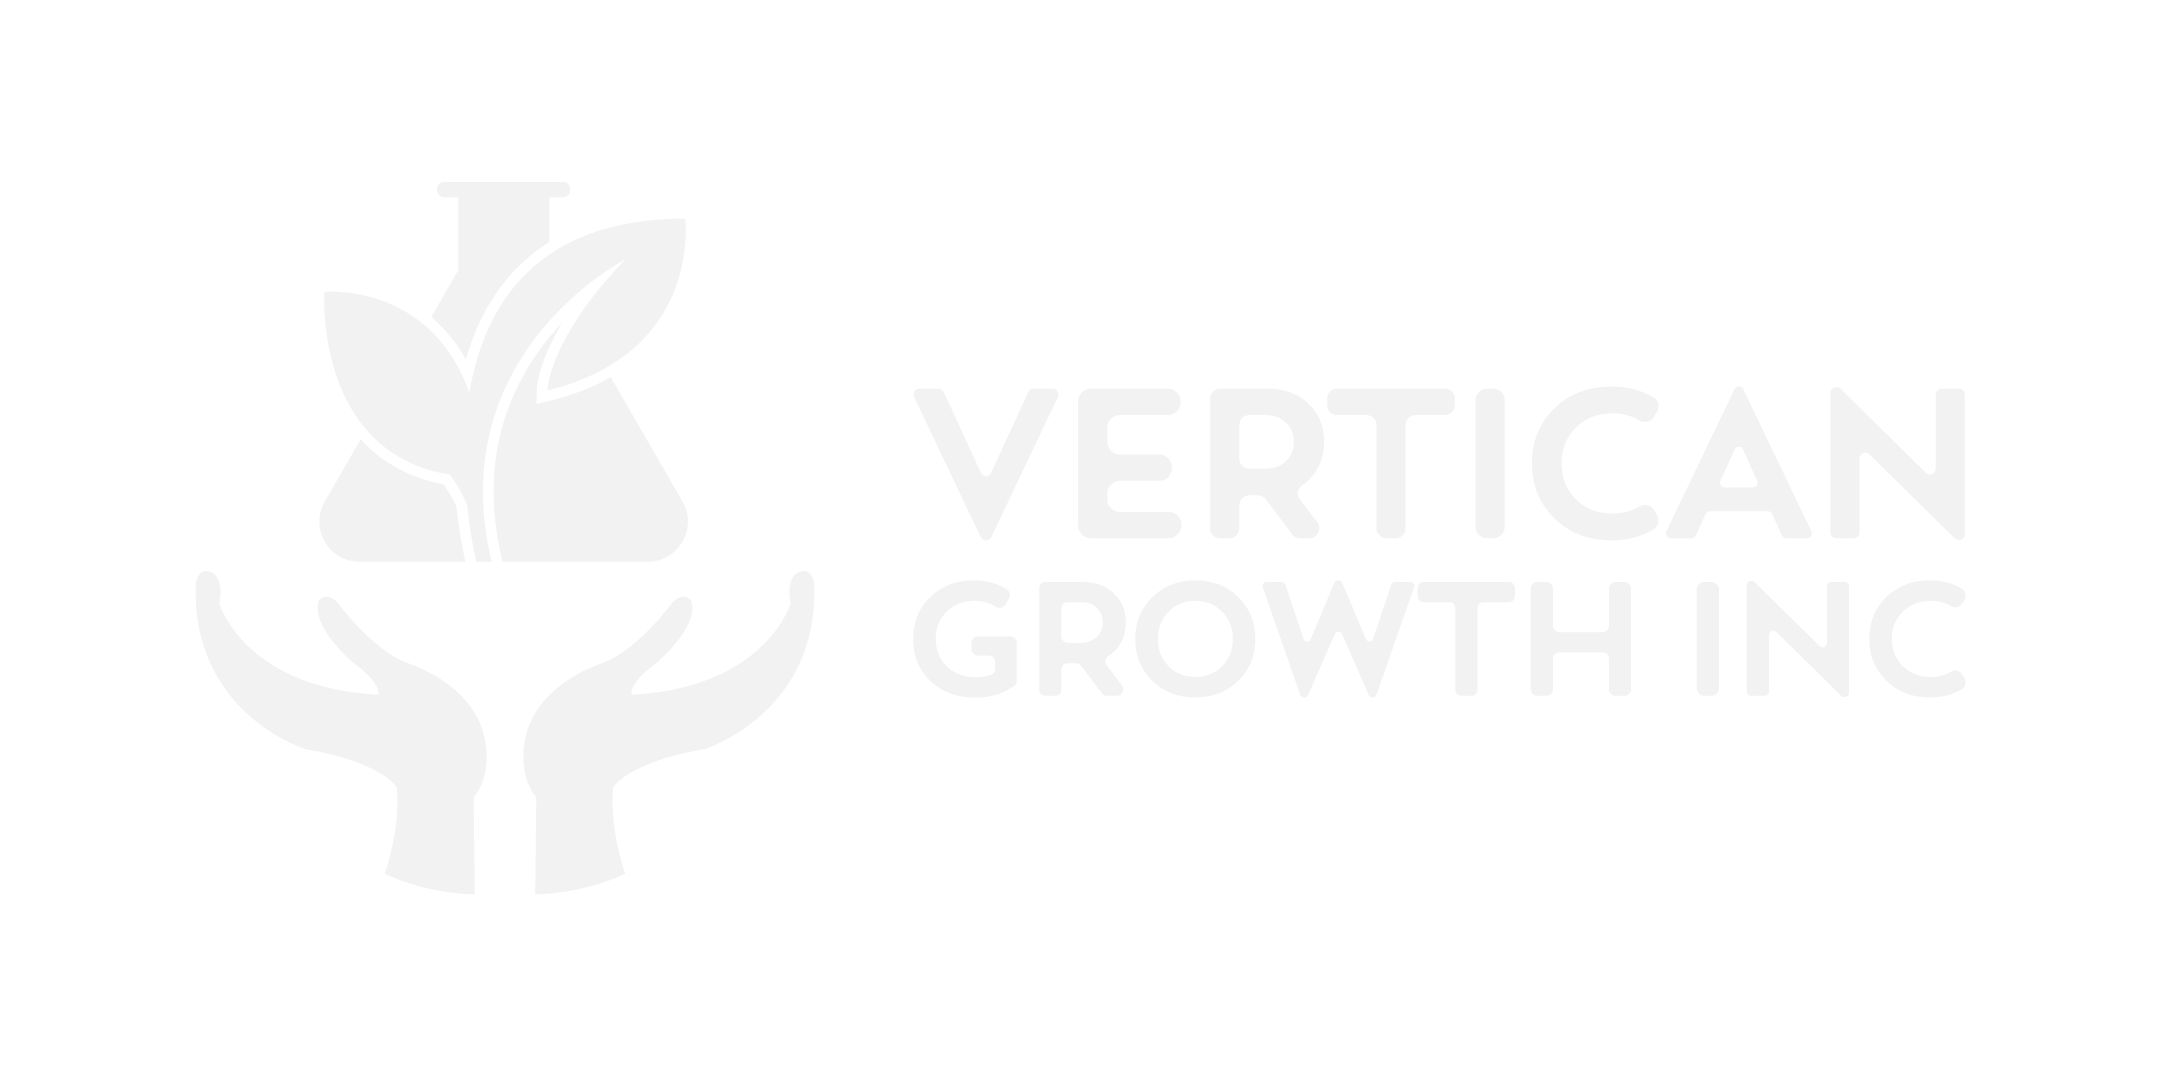 Vertican Growth